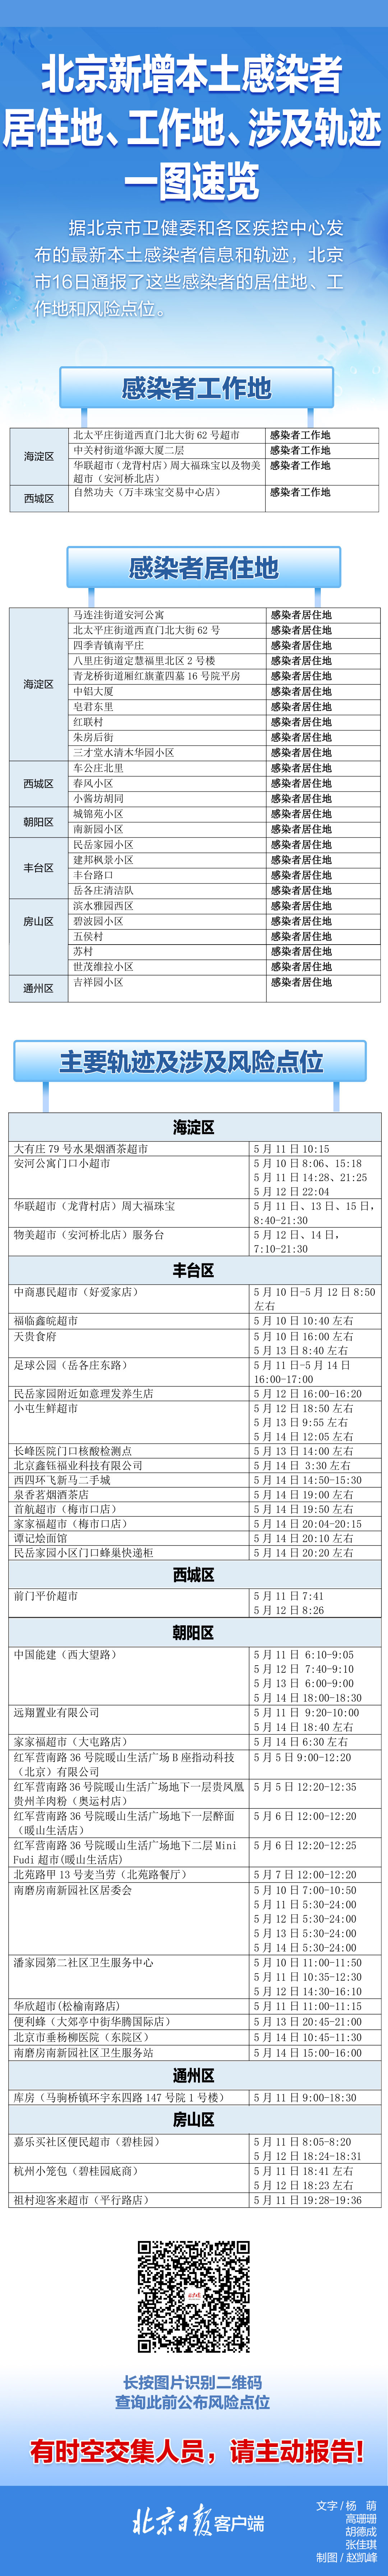 速自查！北京16日通报感染者居住地、风险点位一图速览